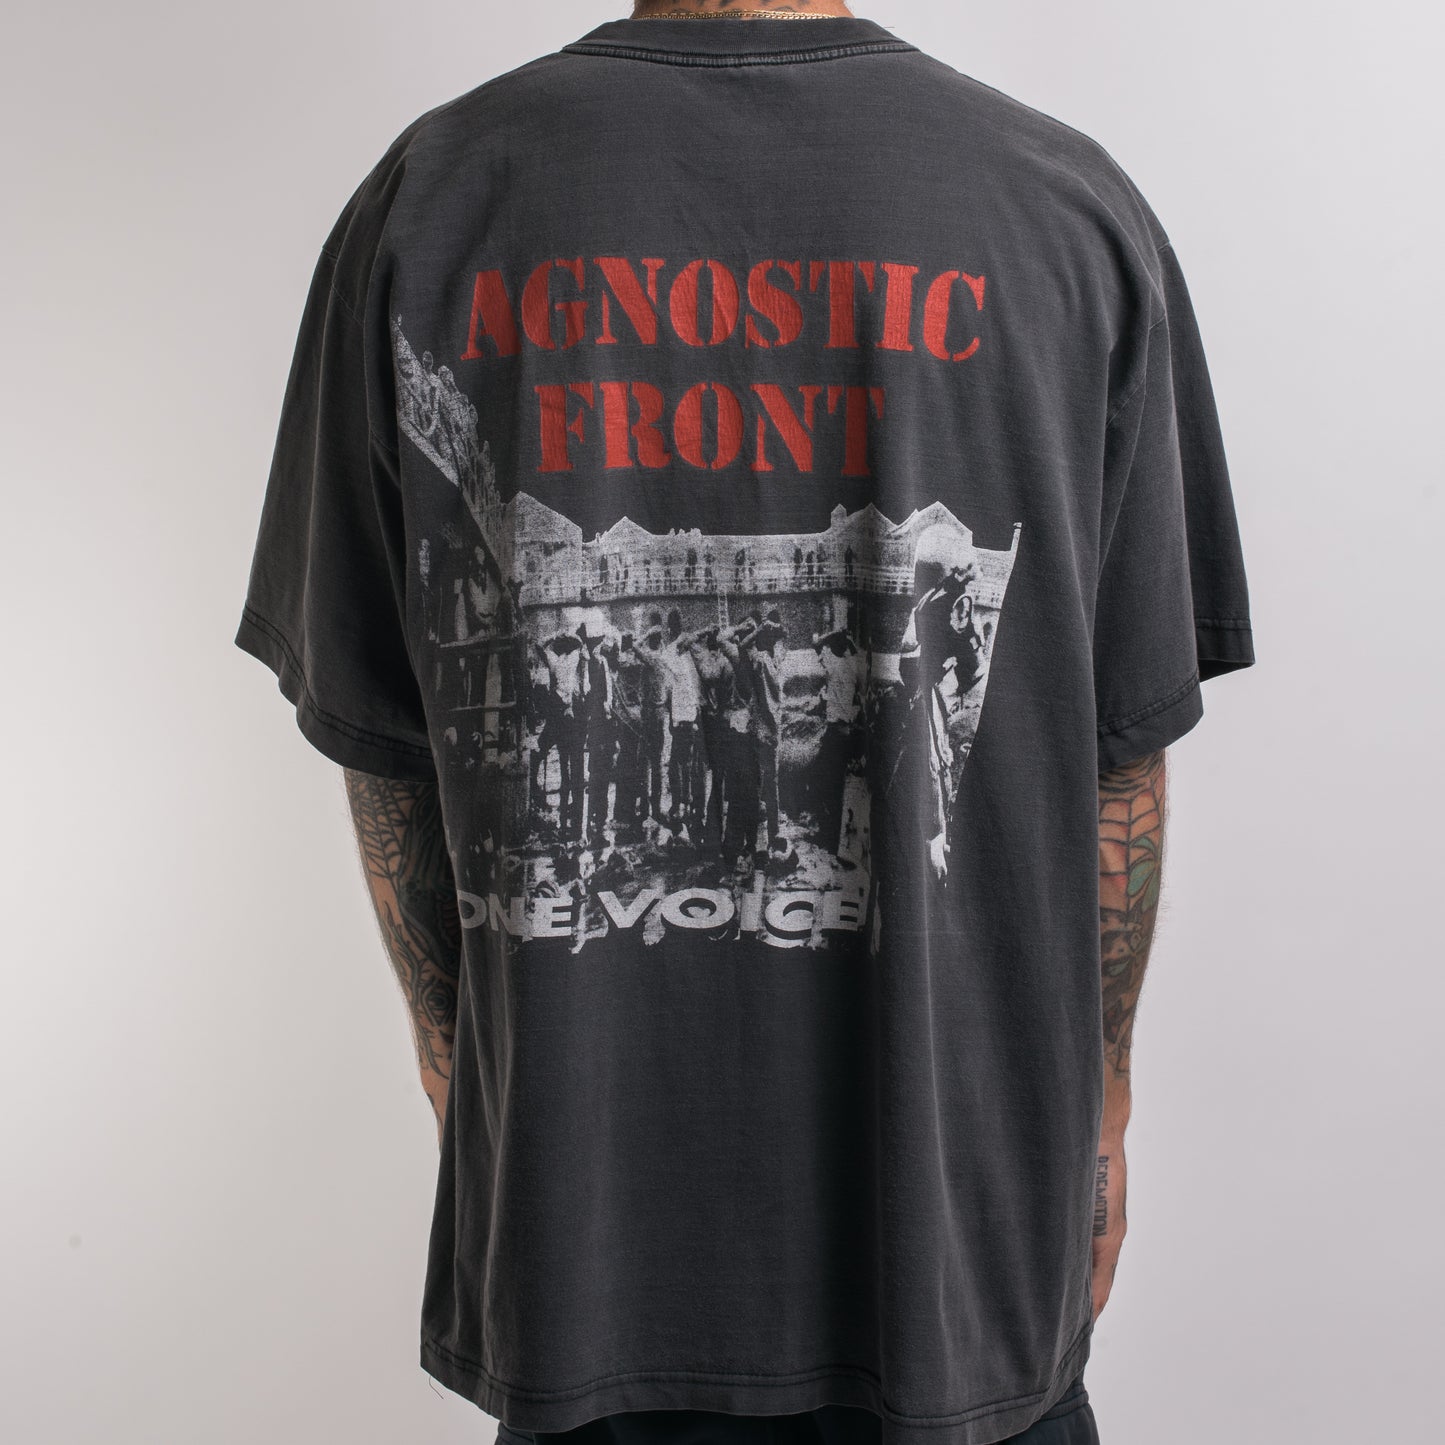 Vintage 1992 Agnostic Front One Voice Euro Tour T-Shirt – Mills Vintage USA